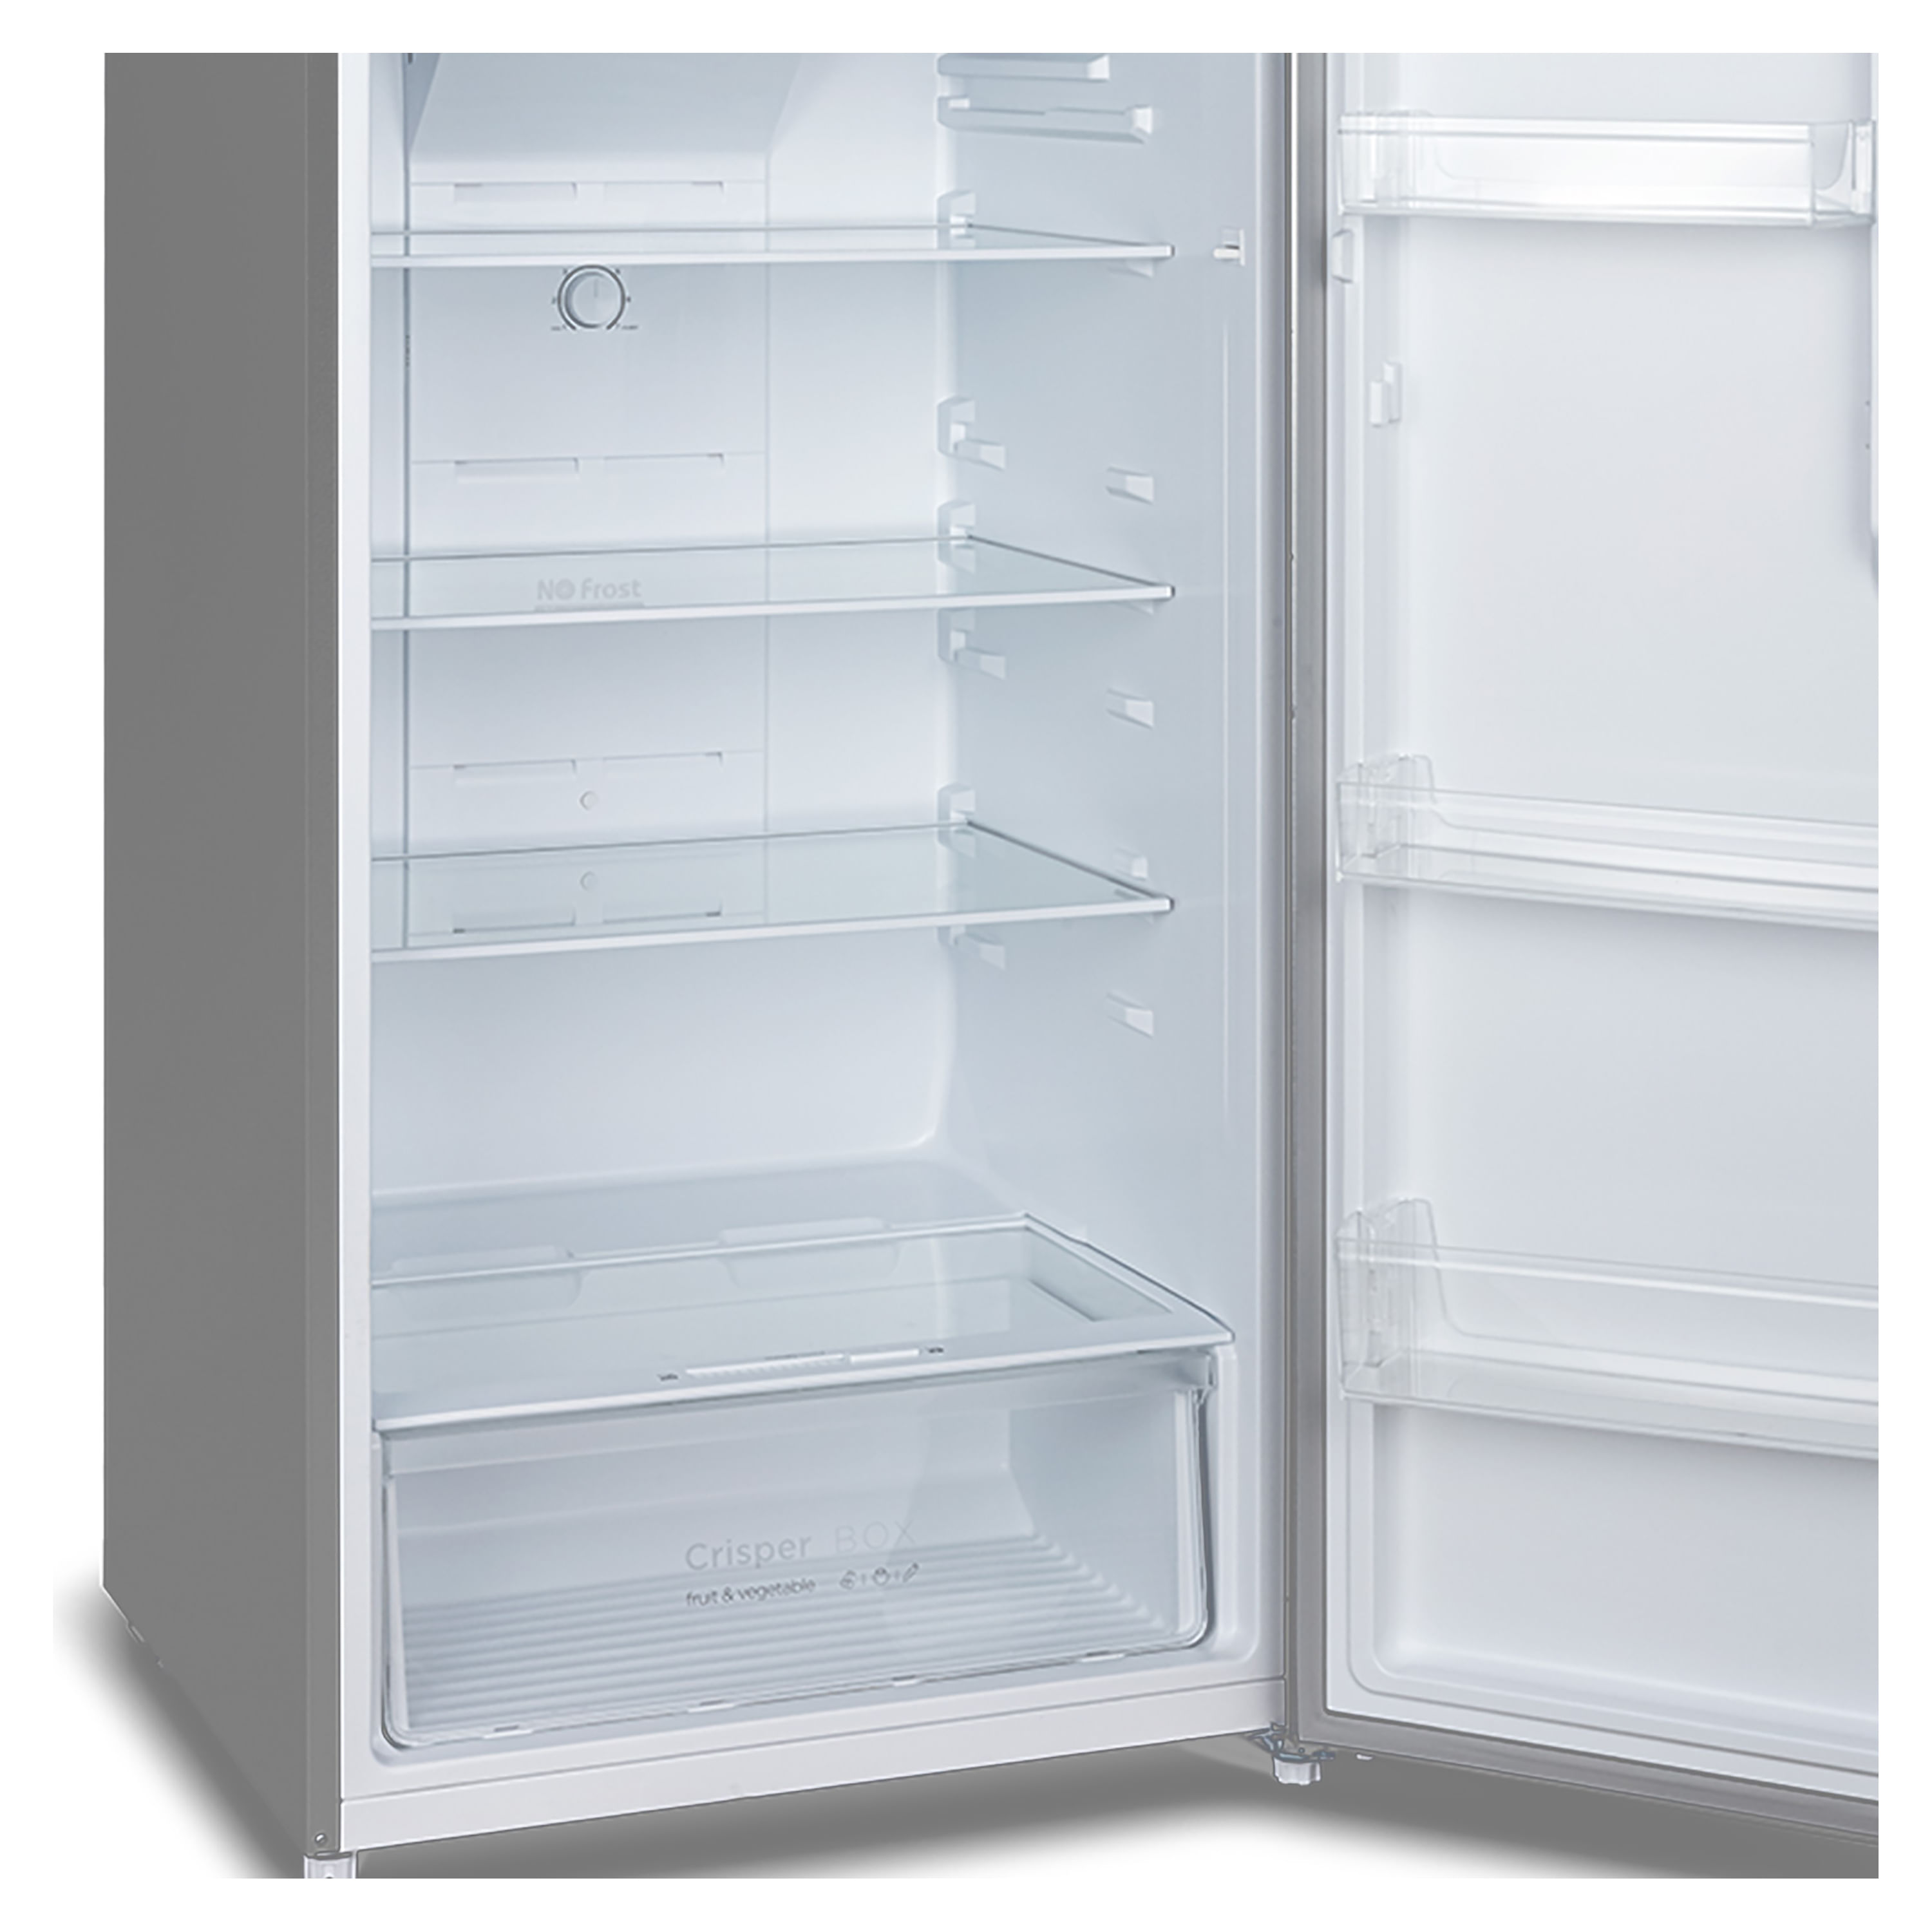 Comprar Refrigerador No Frost Oster 14 Pies Cubicos Color Black